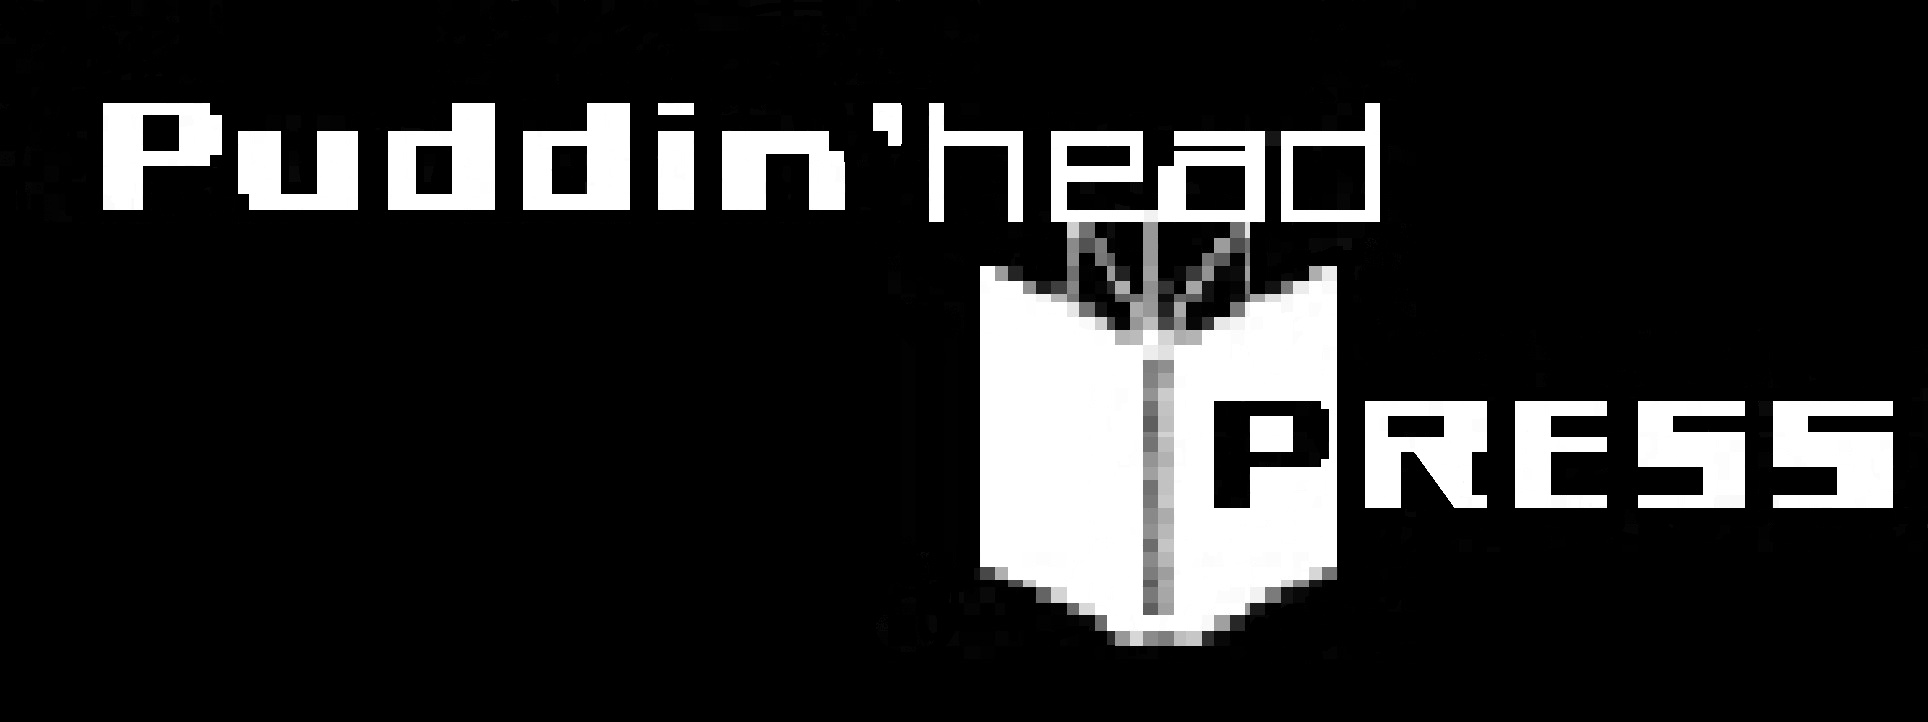 Puddin'head Press Home Page